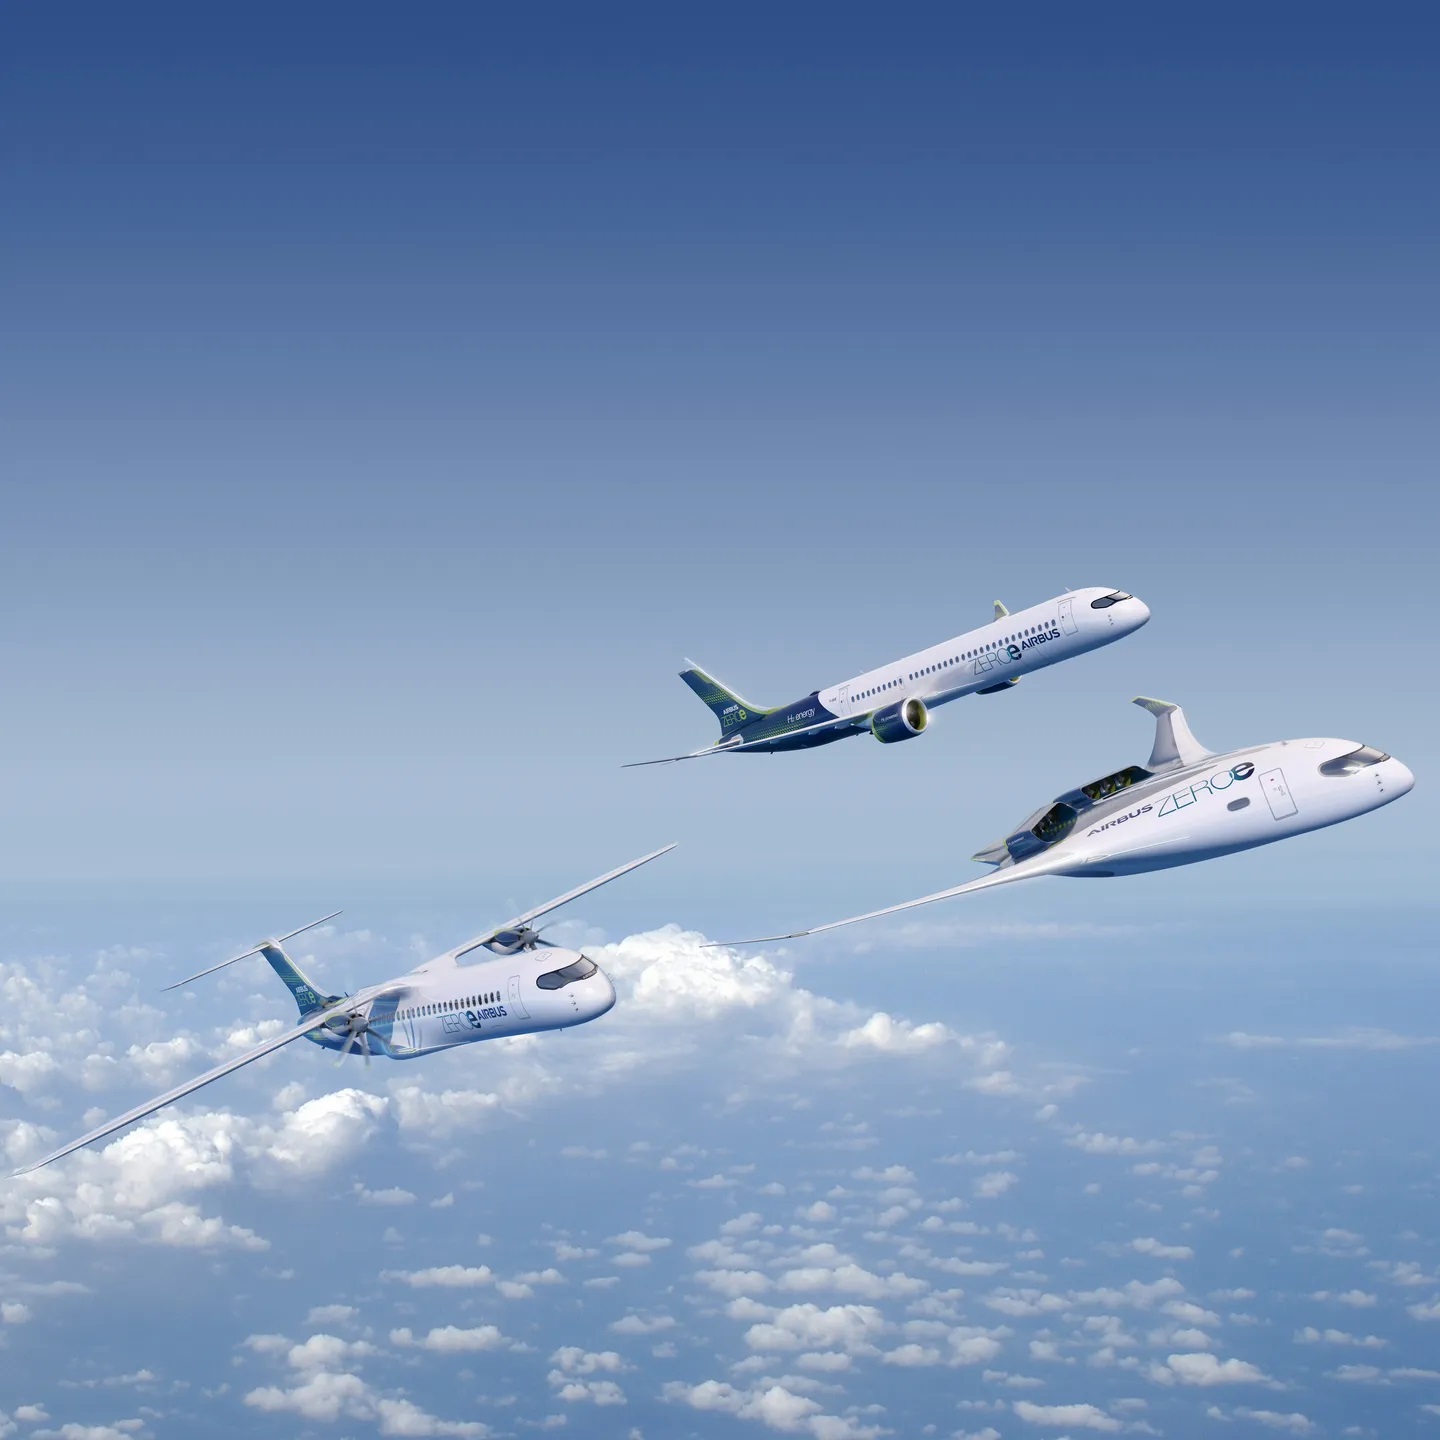 Foto: drie generaties van hybride-elektrische en waterstof-elektrische vliegtuigen zoals Airbus die gepland heeft.